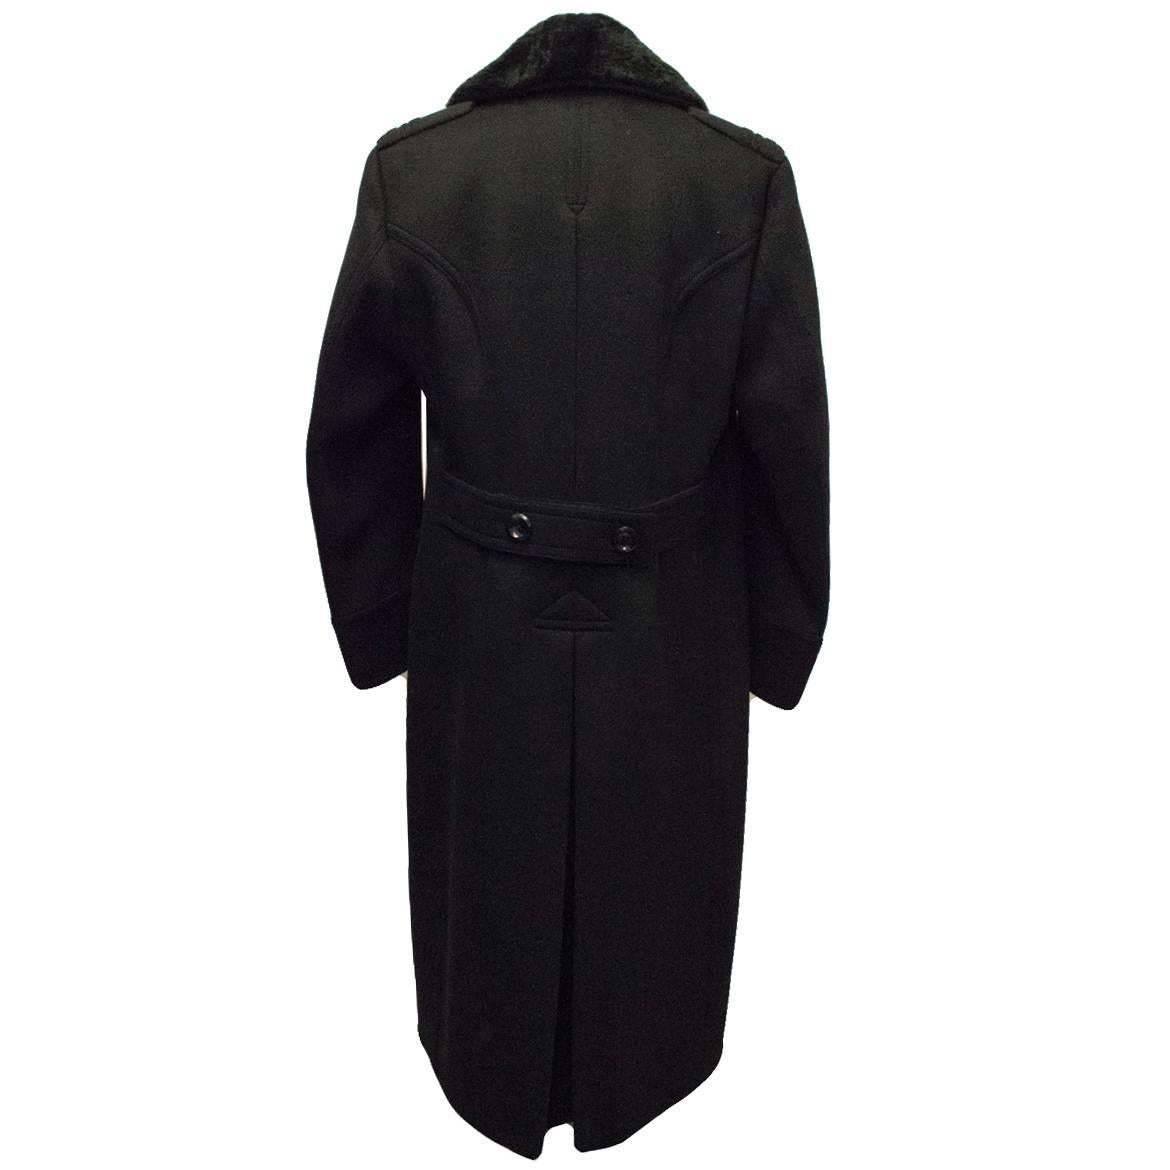 men's cashmere coat with fur collar